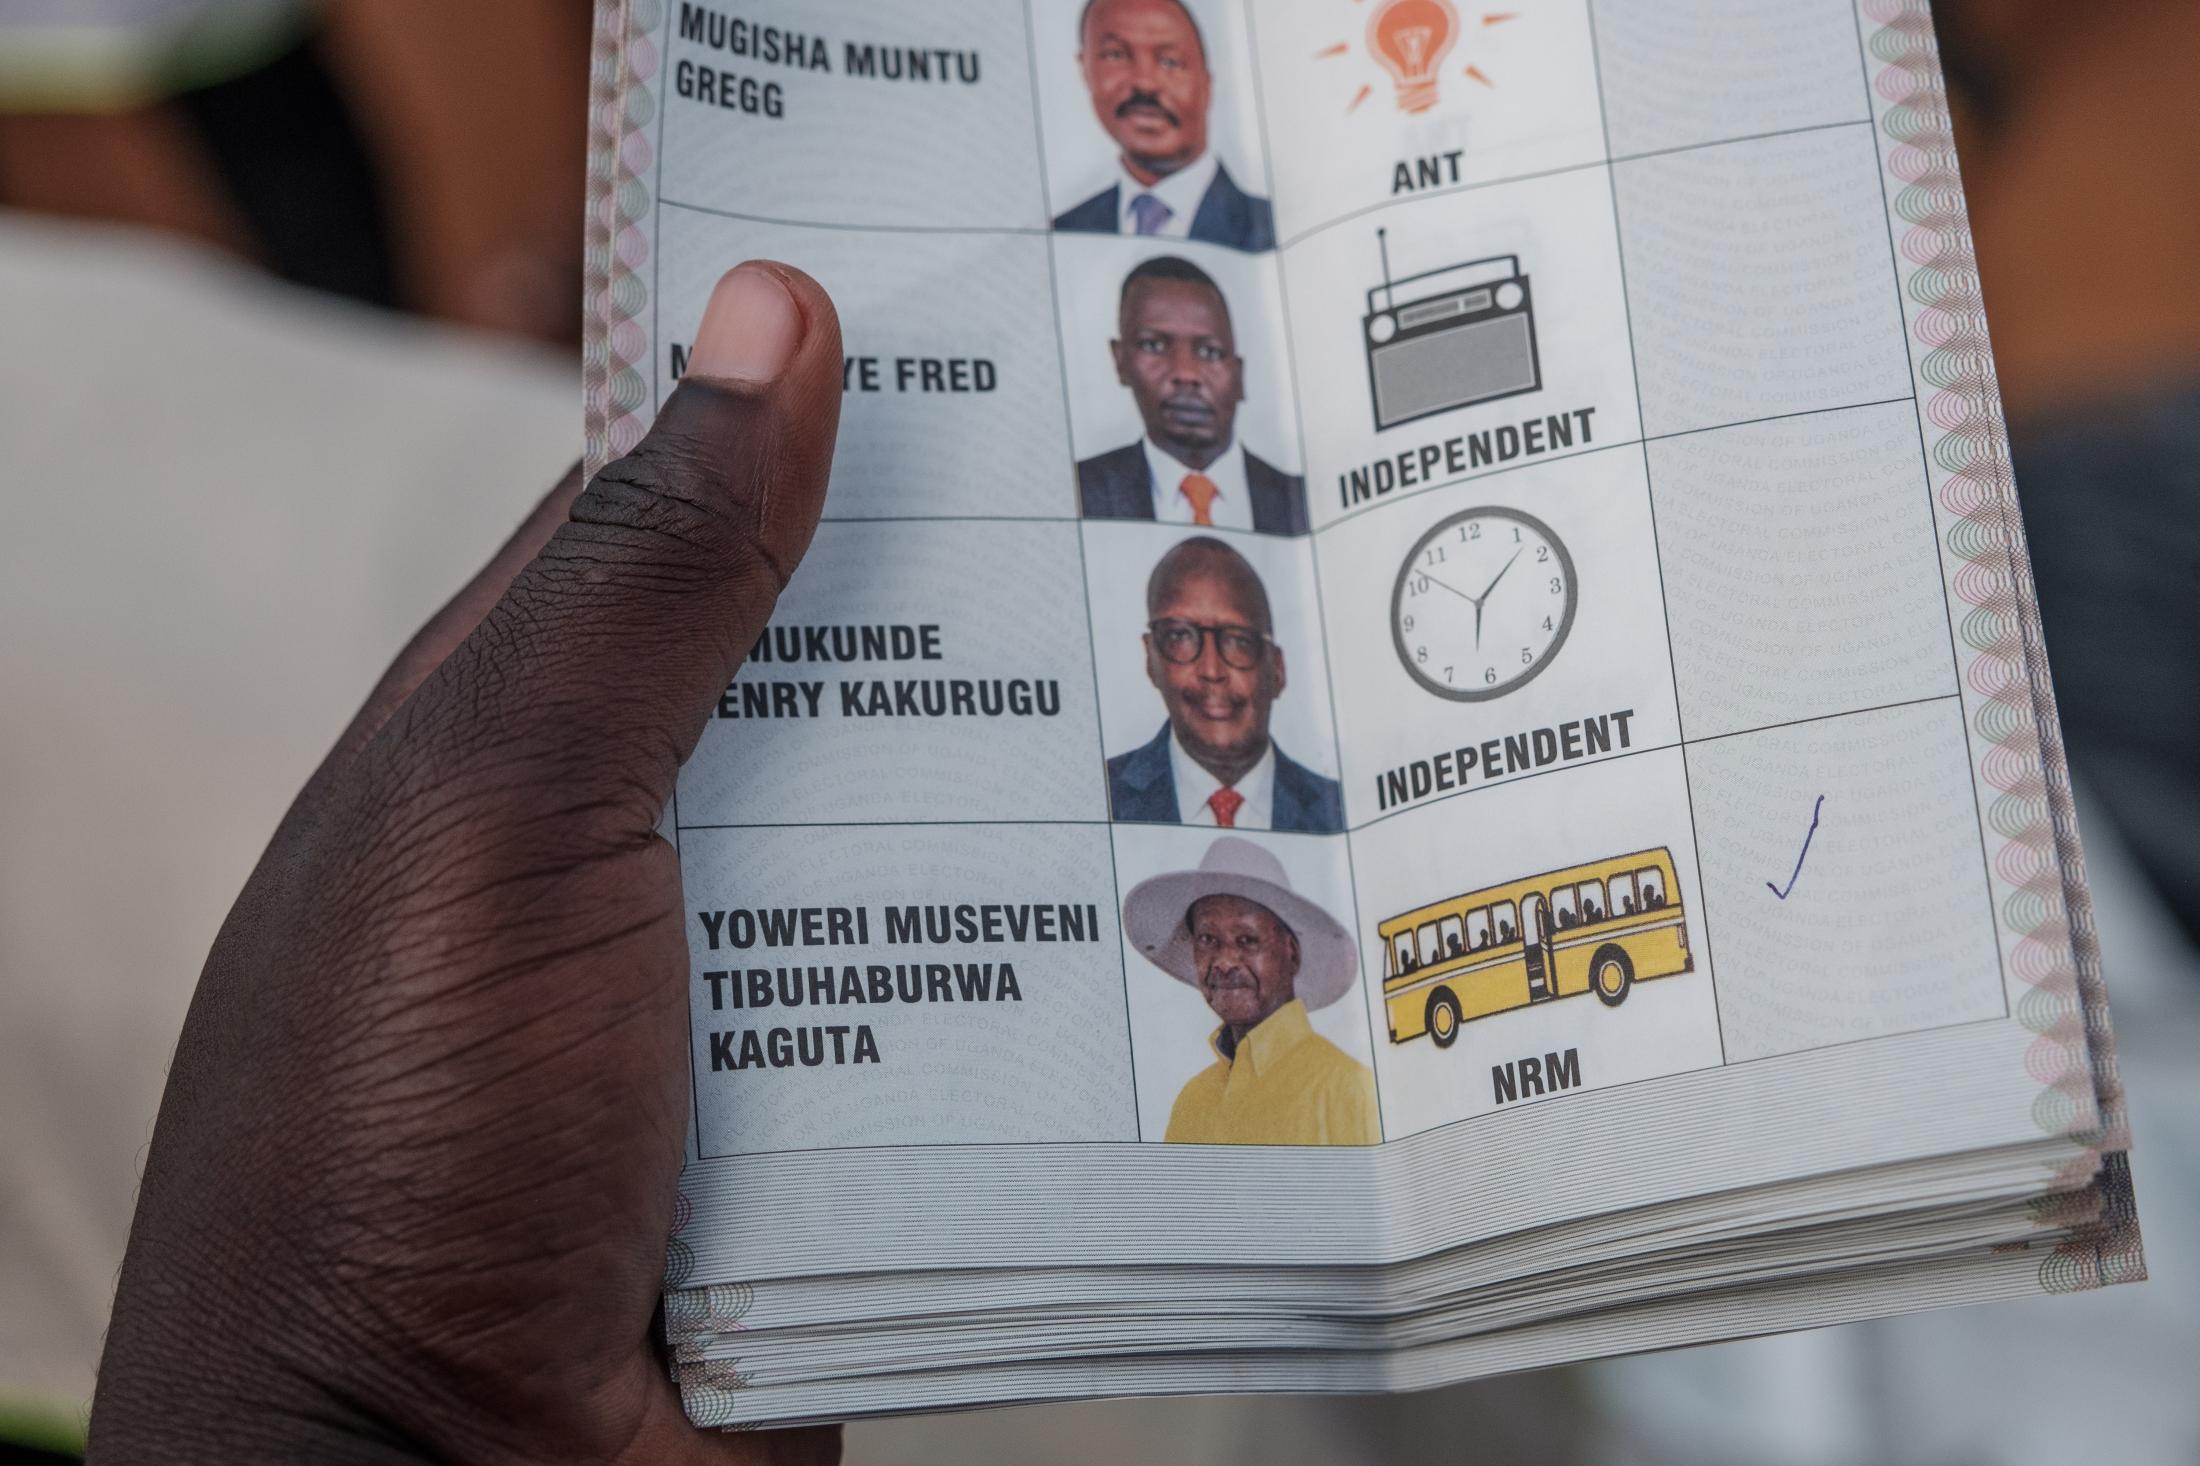 #UGdecides2021